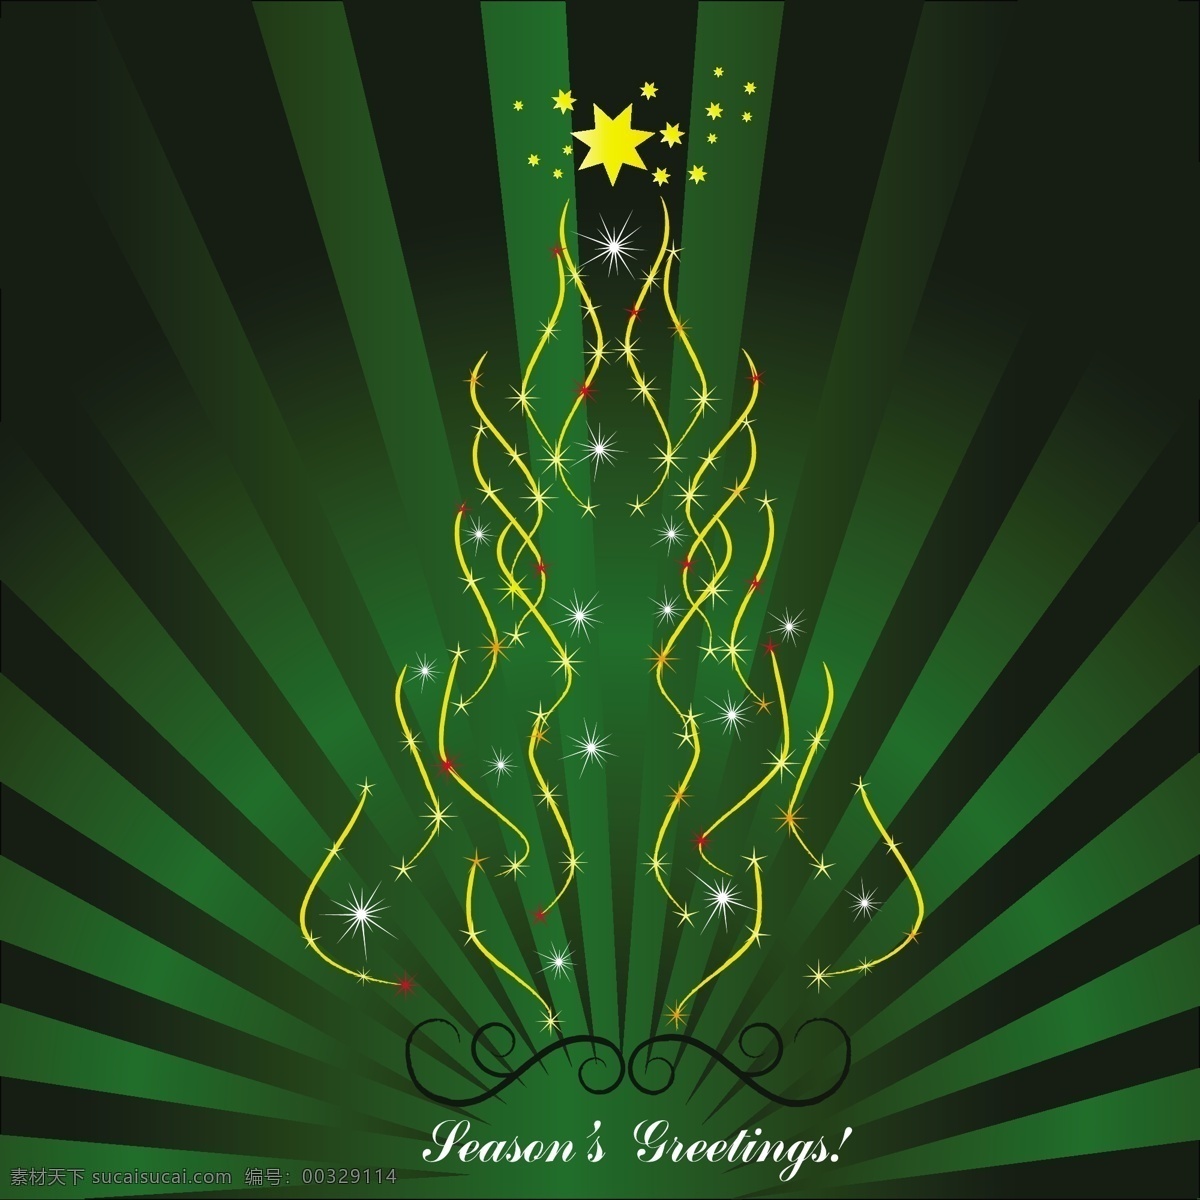 绿色背景 圣诞树 背景 圣诞节 明星卡 圣诞快乐 冬天 圣诞 装饰 卡片 文化 冷 阳光 节假日 季节 节日 十二月